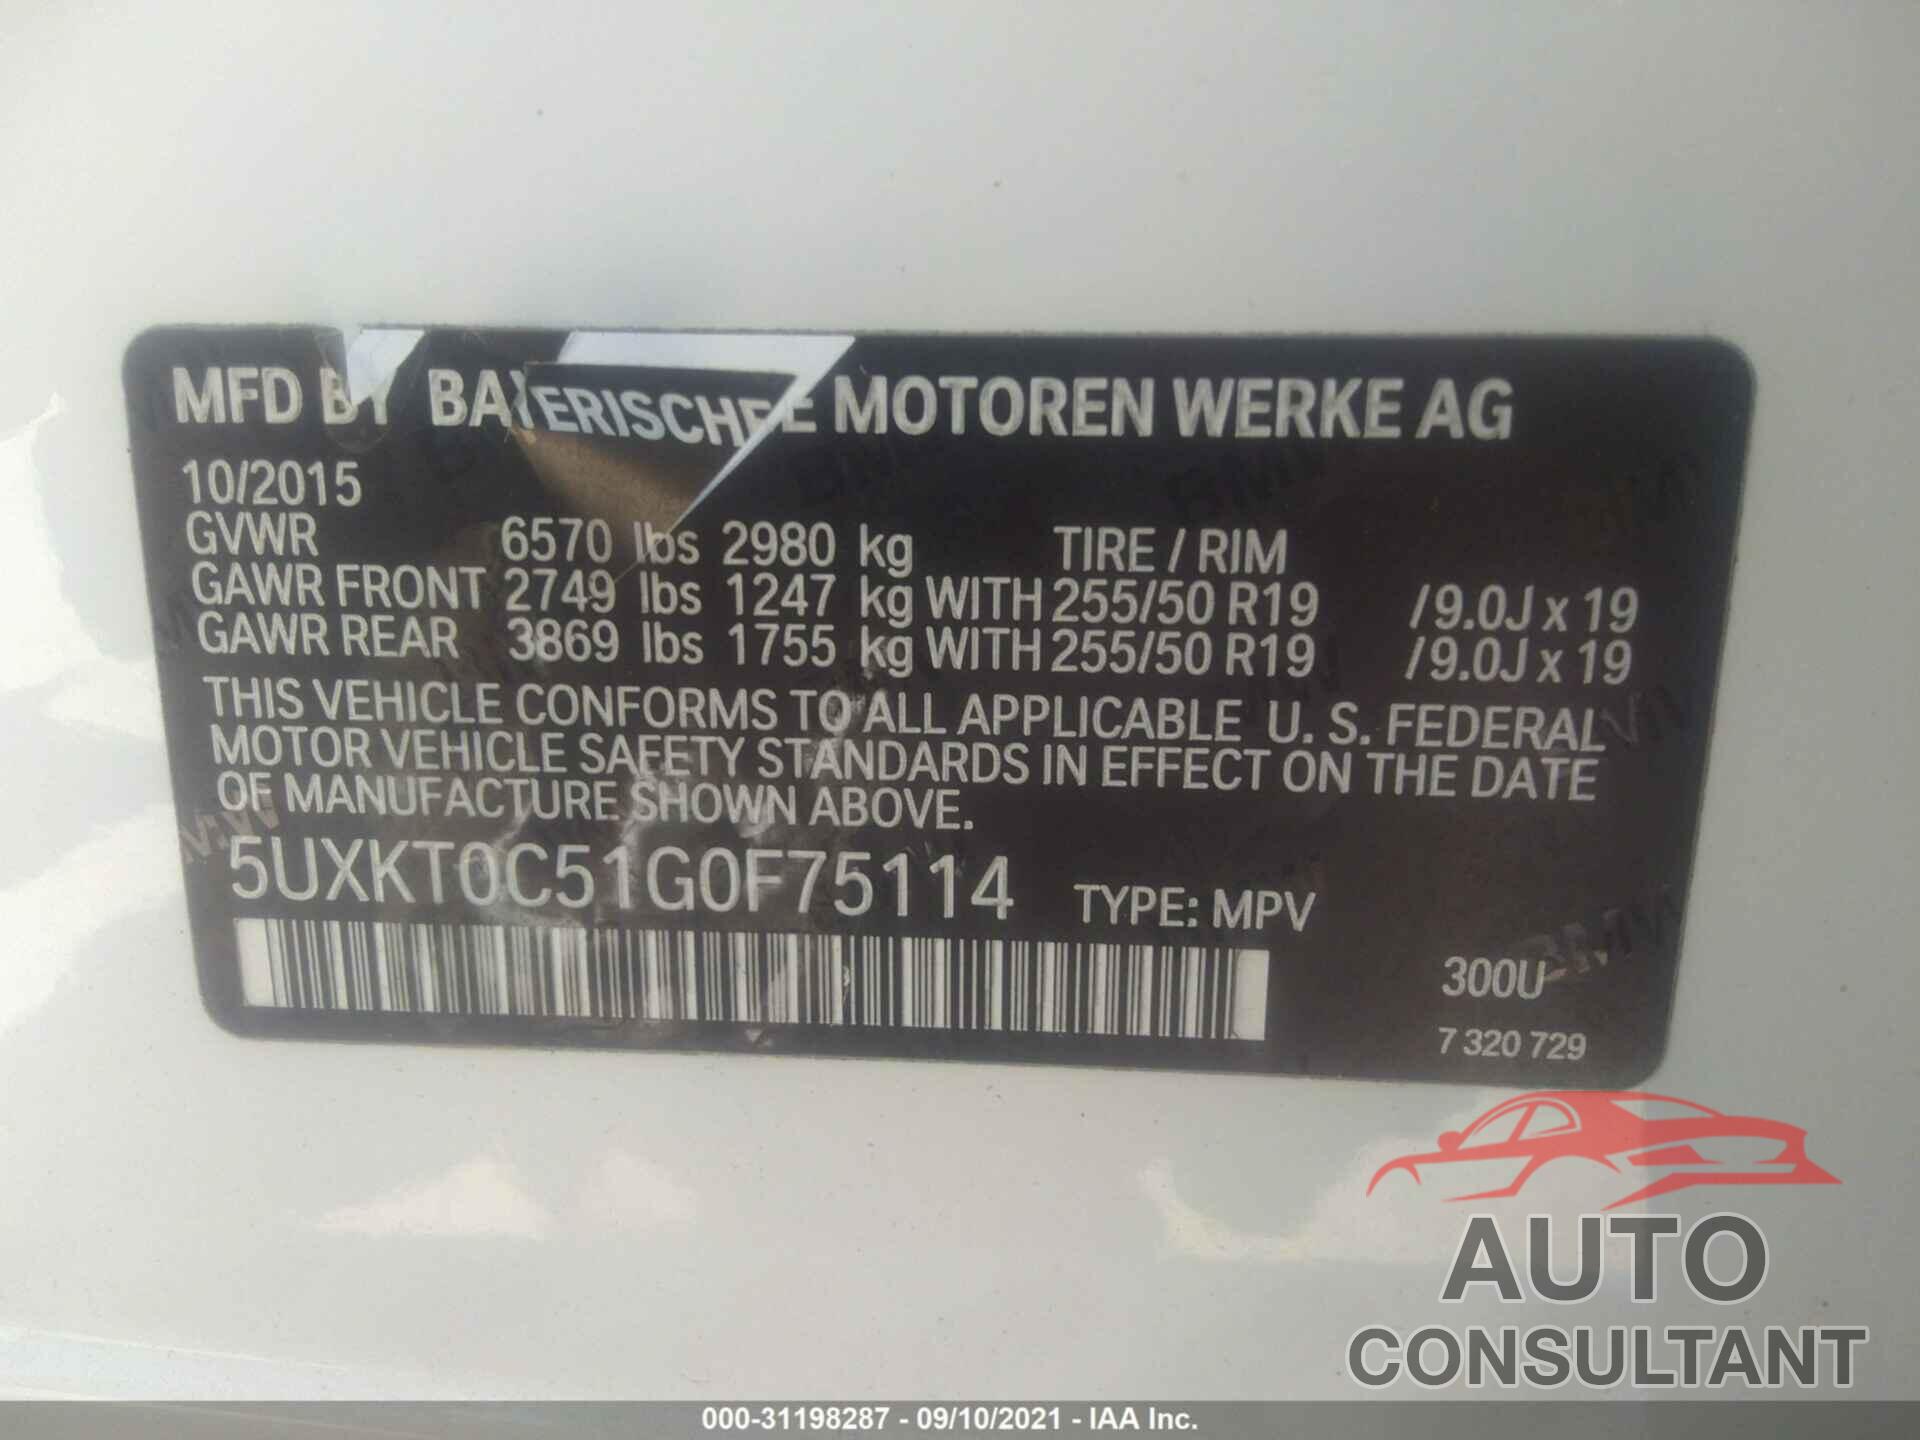 BMW X5 EDRIVE 2016 - 5UXKT0C51G0F75114